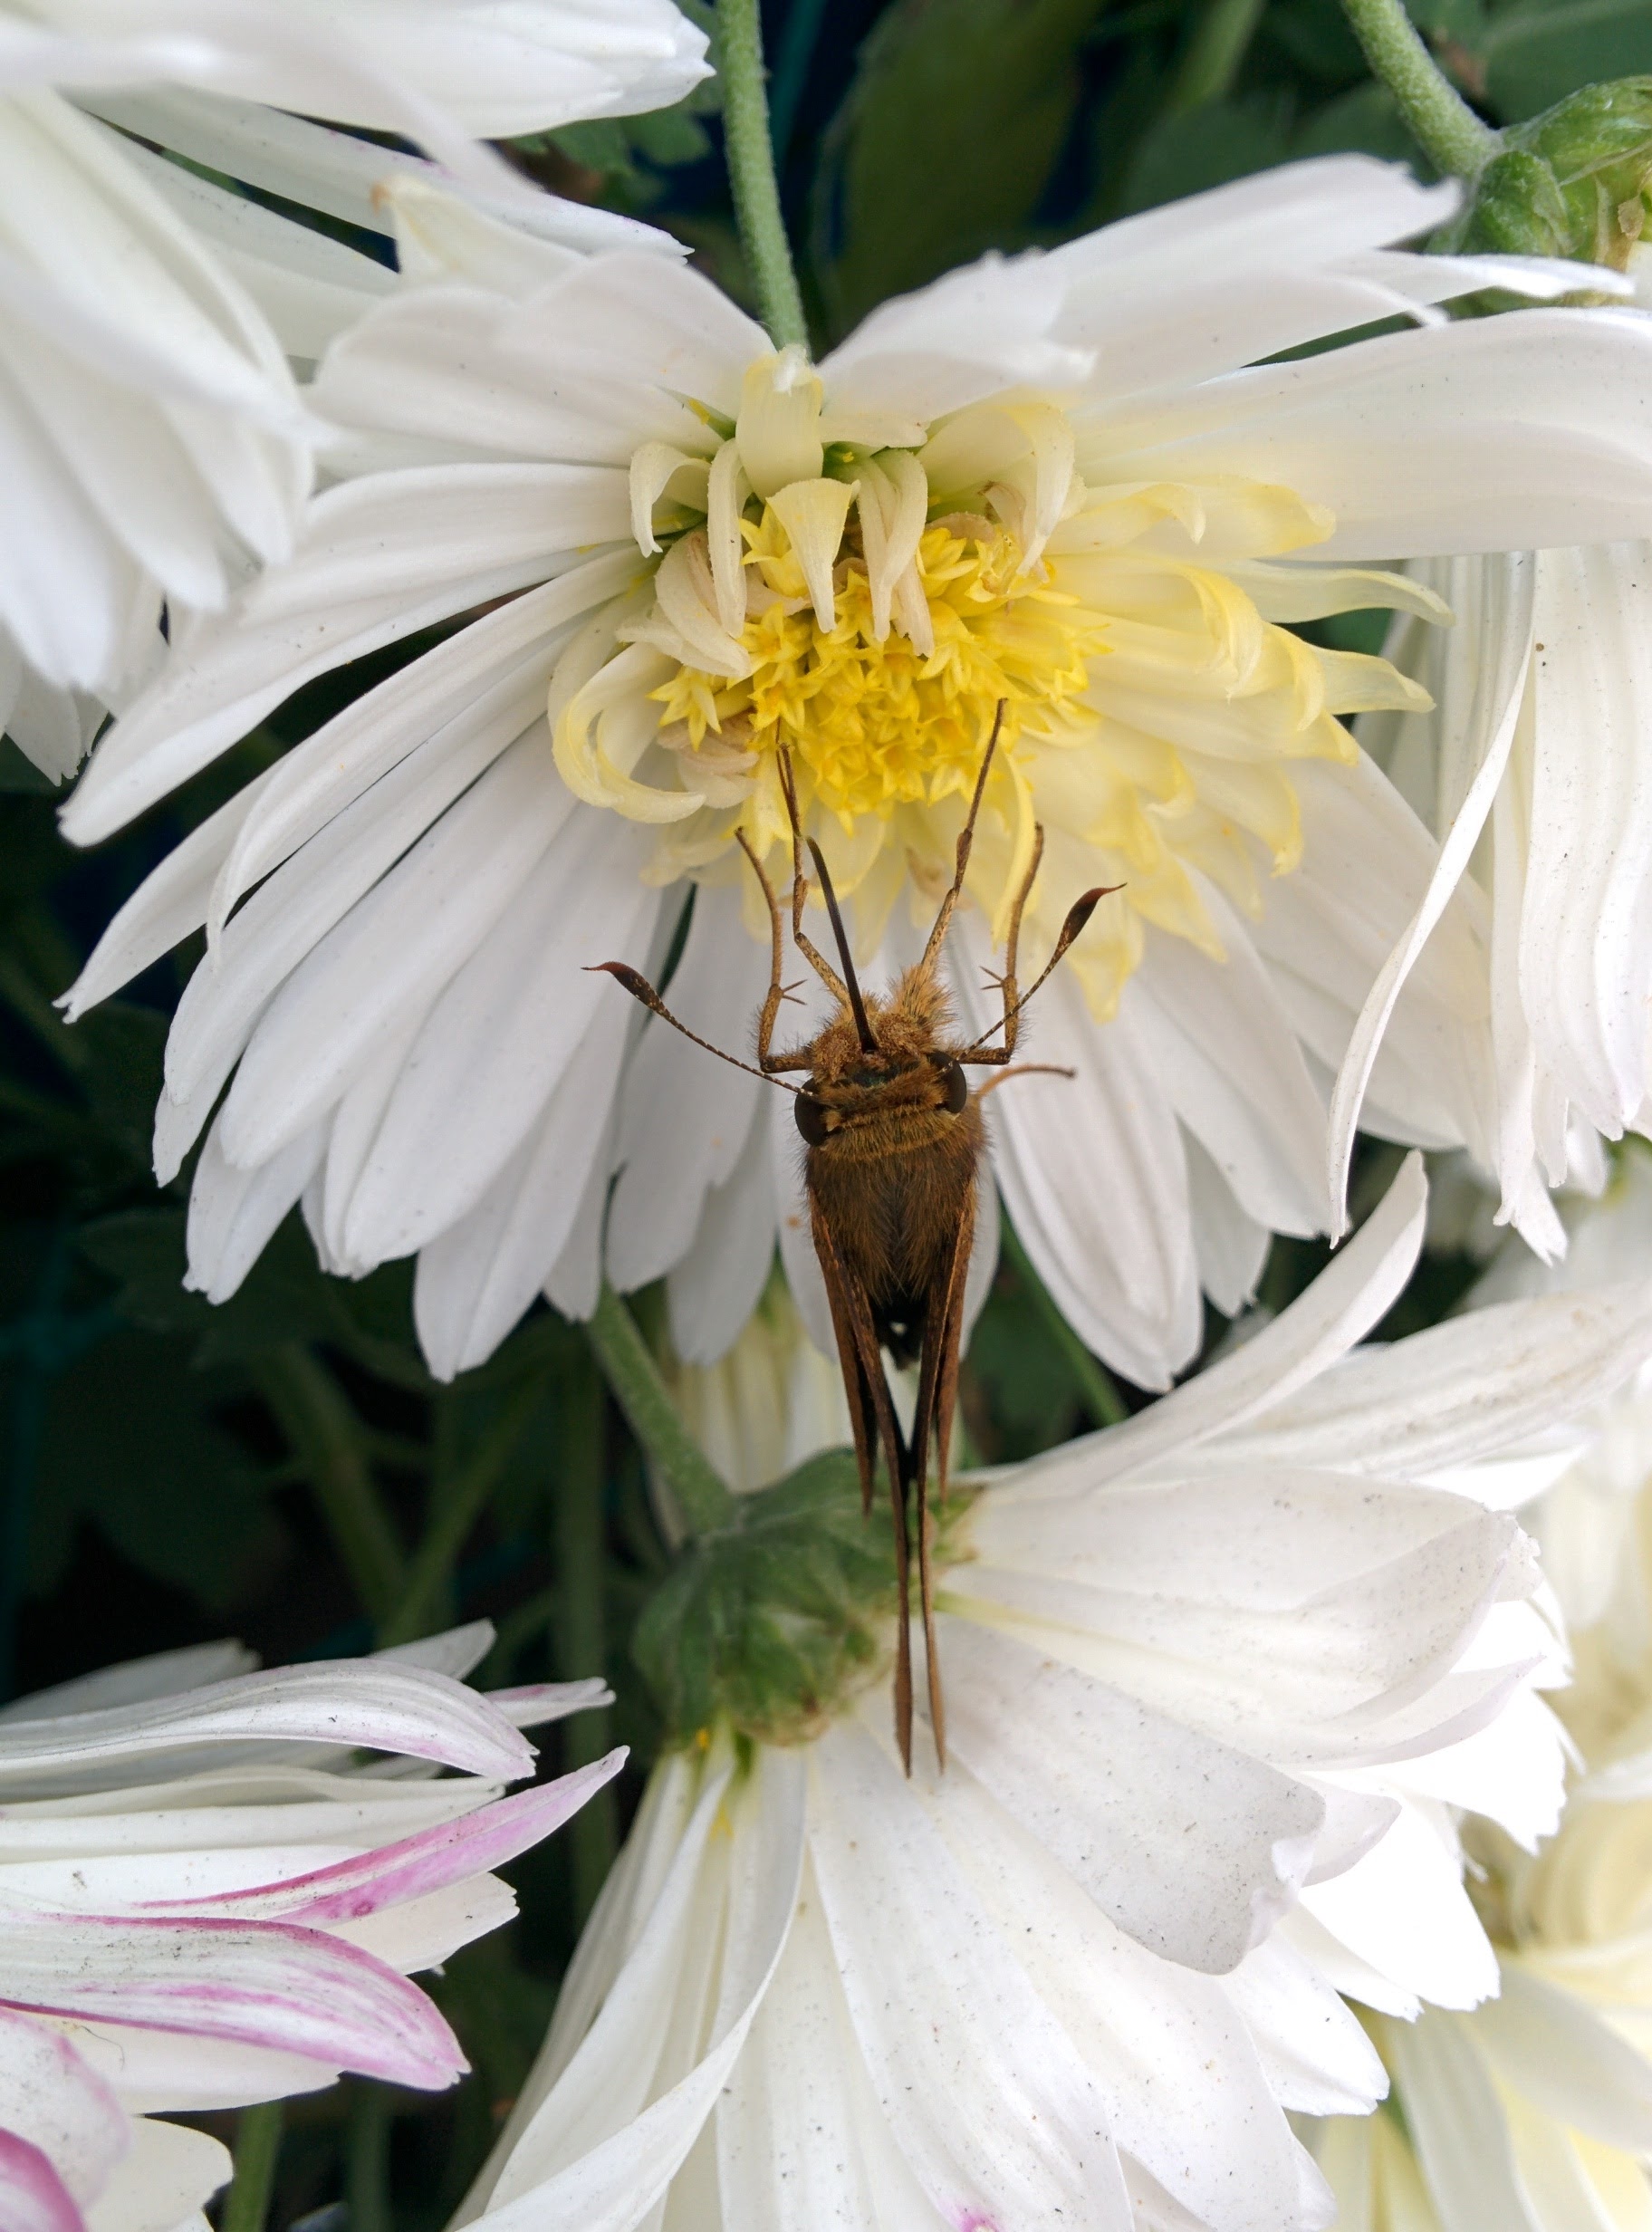 IMG_20151024_125951.jpg 하얀색 국화꽃 찾은 줄점팔랑나비